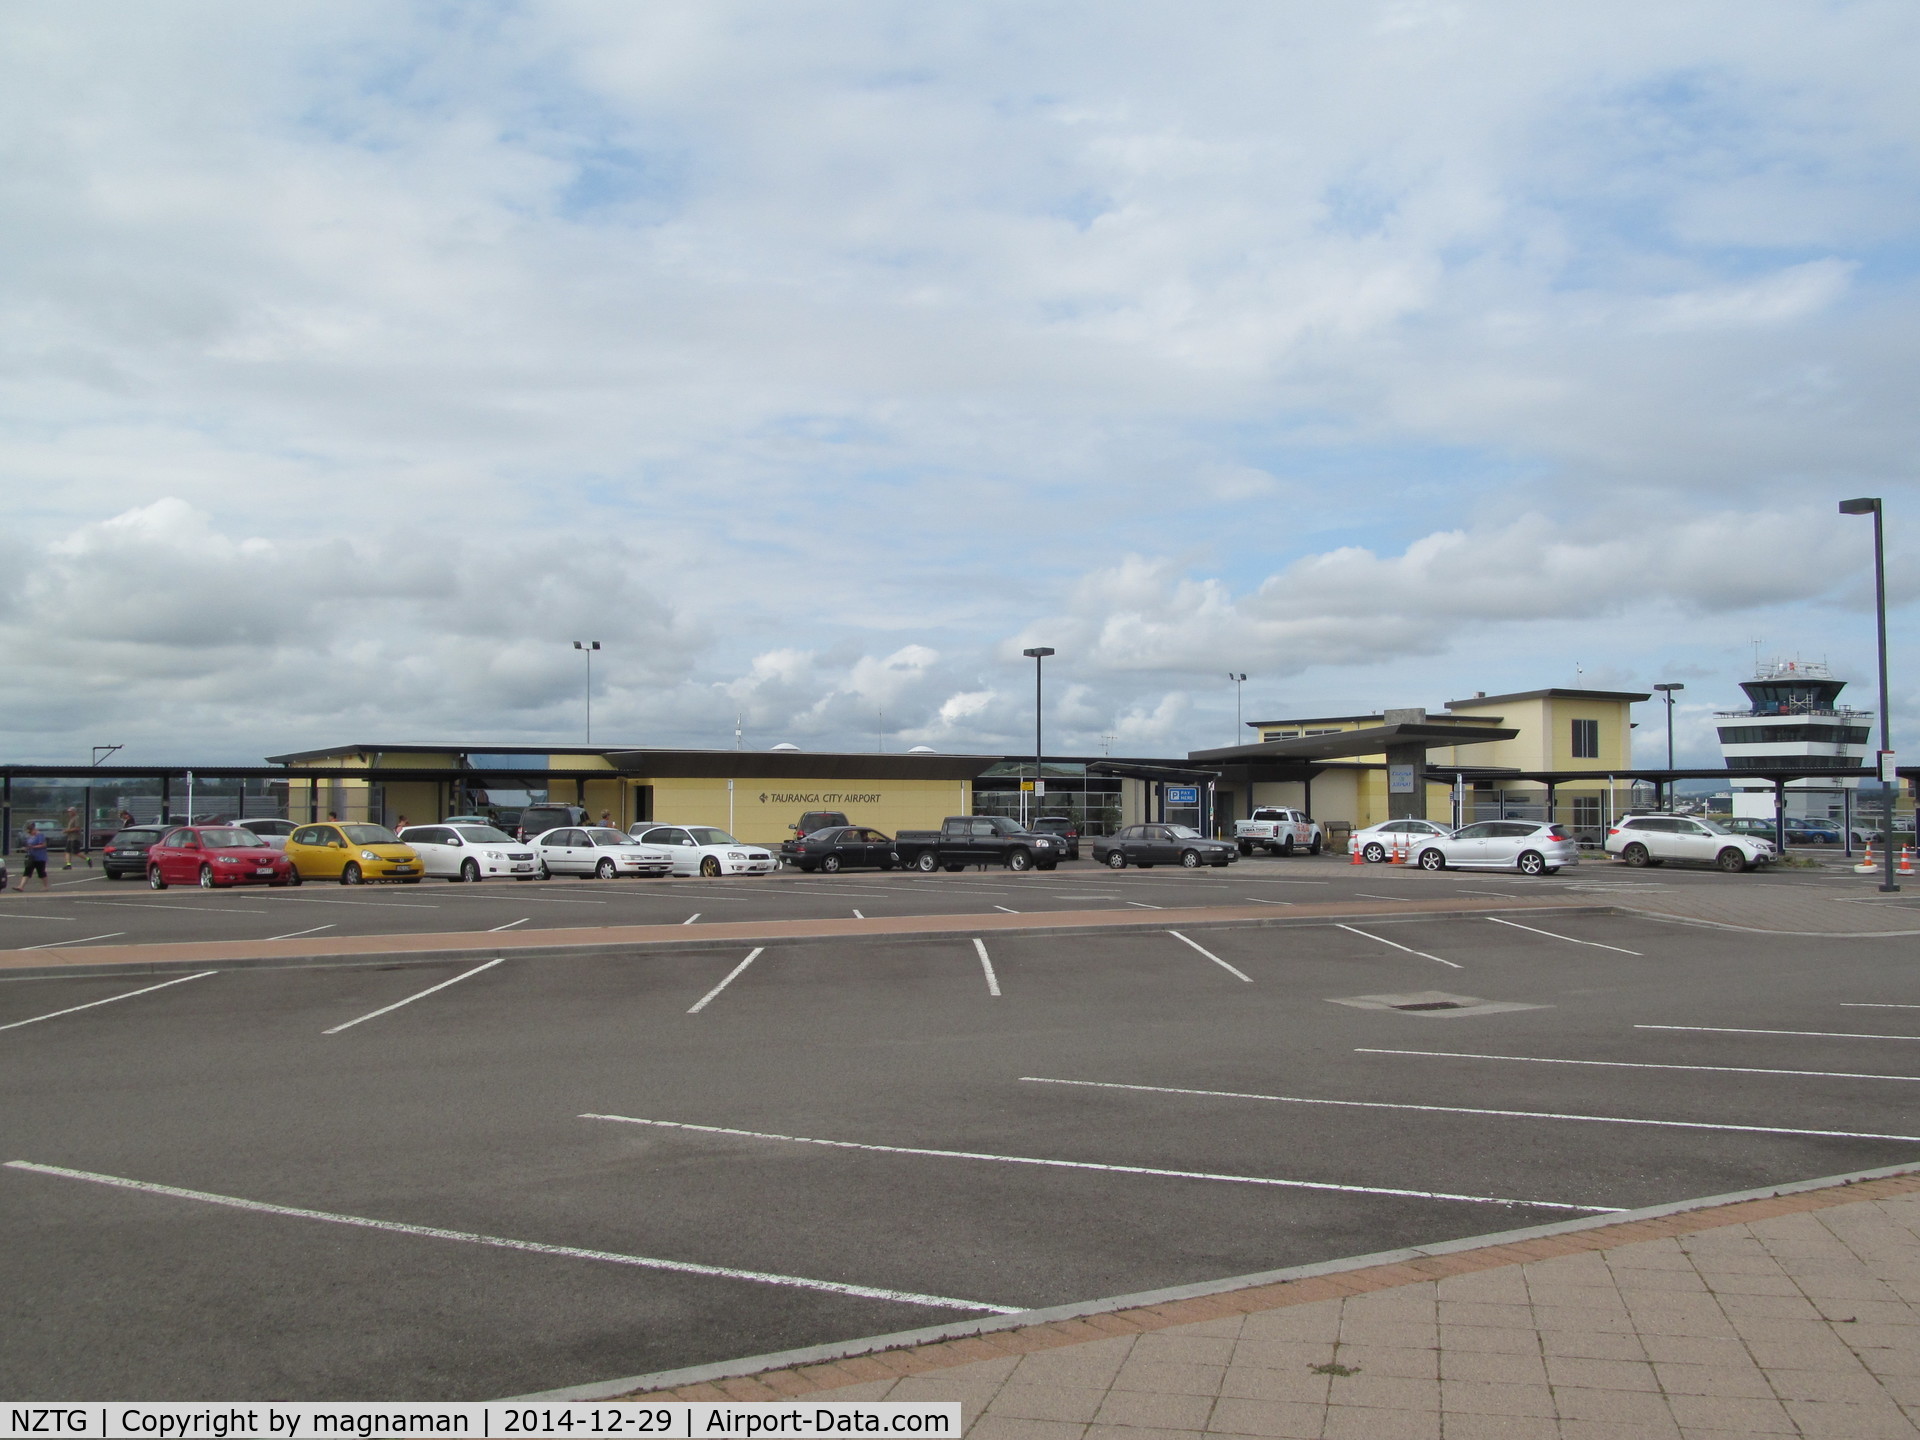 Tauranga Airport, Tauranga New Zealand (NZTG) - terminal from car park.